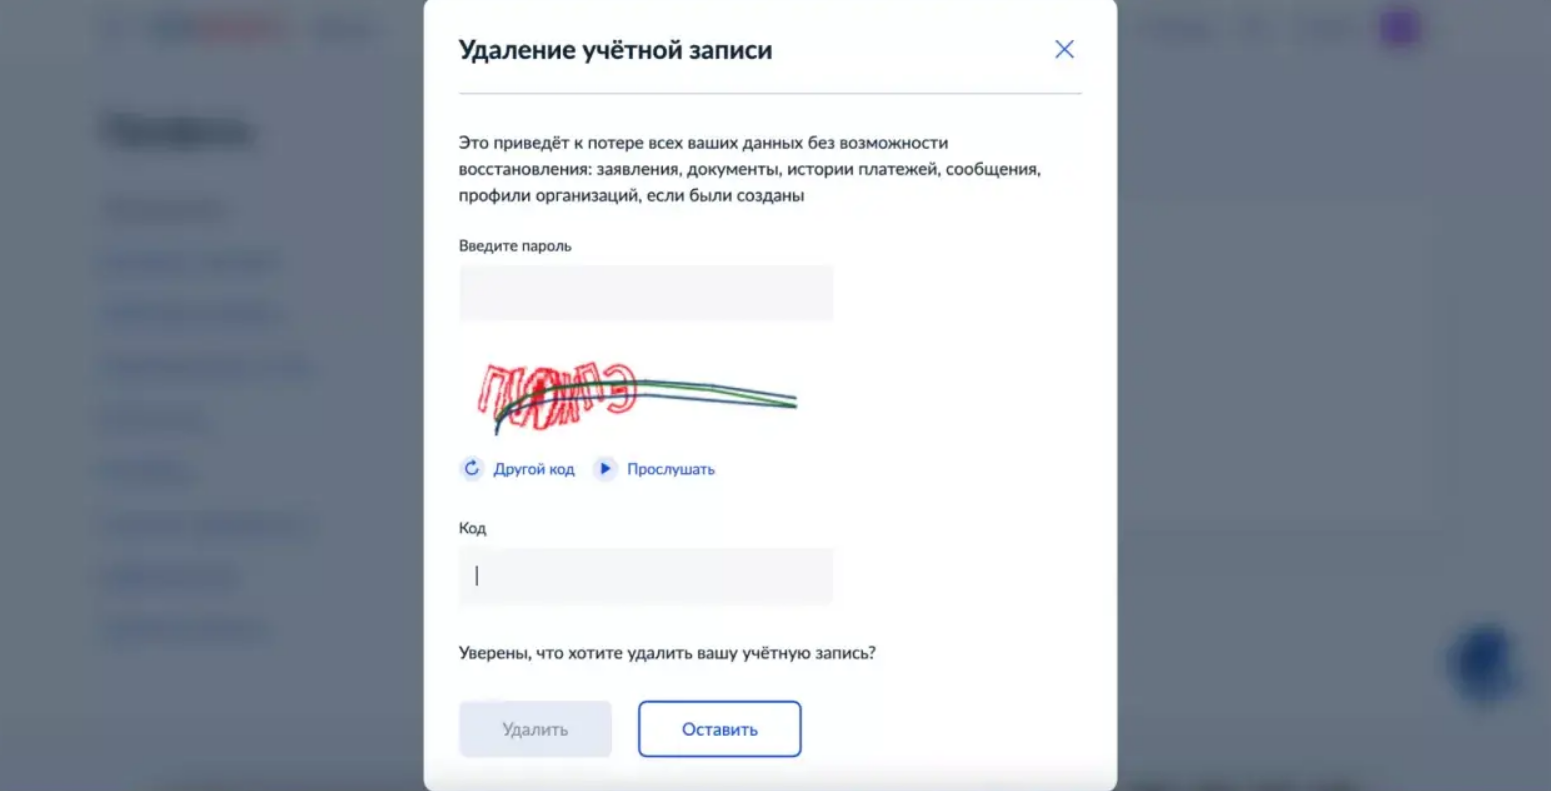 Удалить аккаунт телеграмм с телефона навсегда на русском фото 96